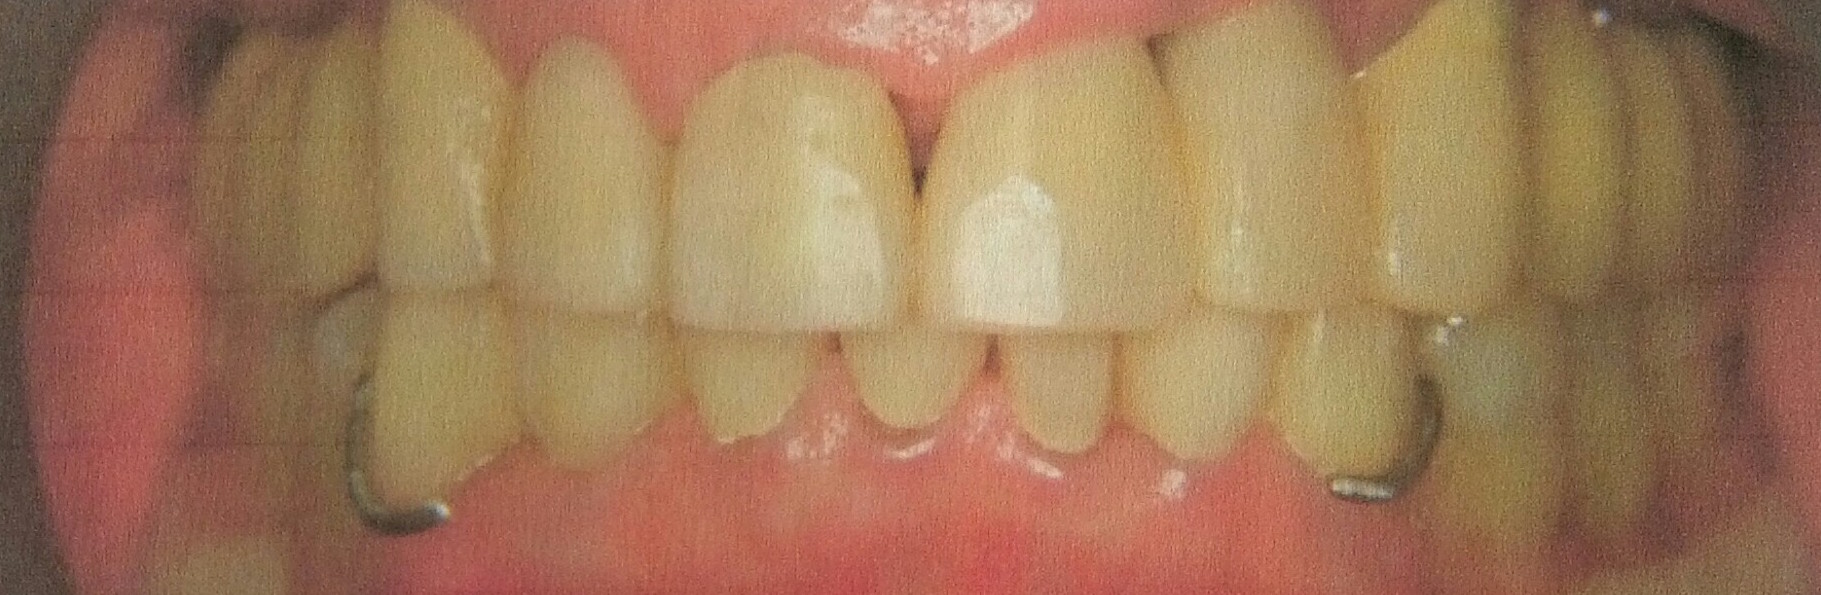 Zähne eines Patienten